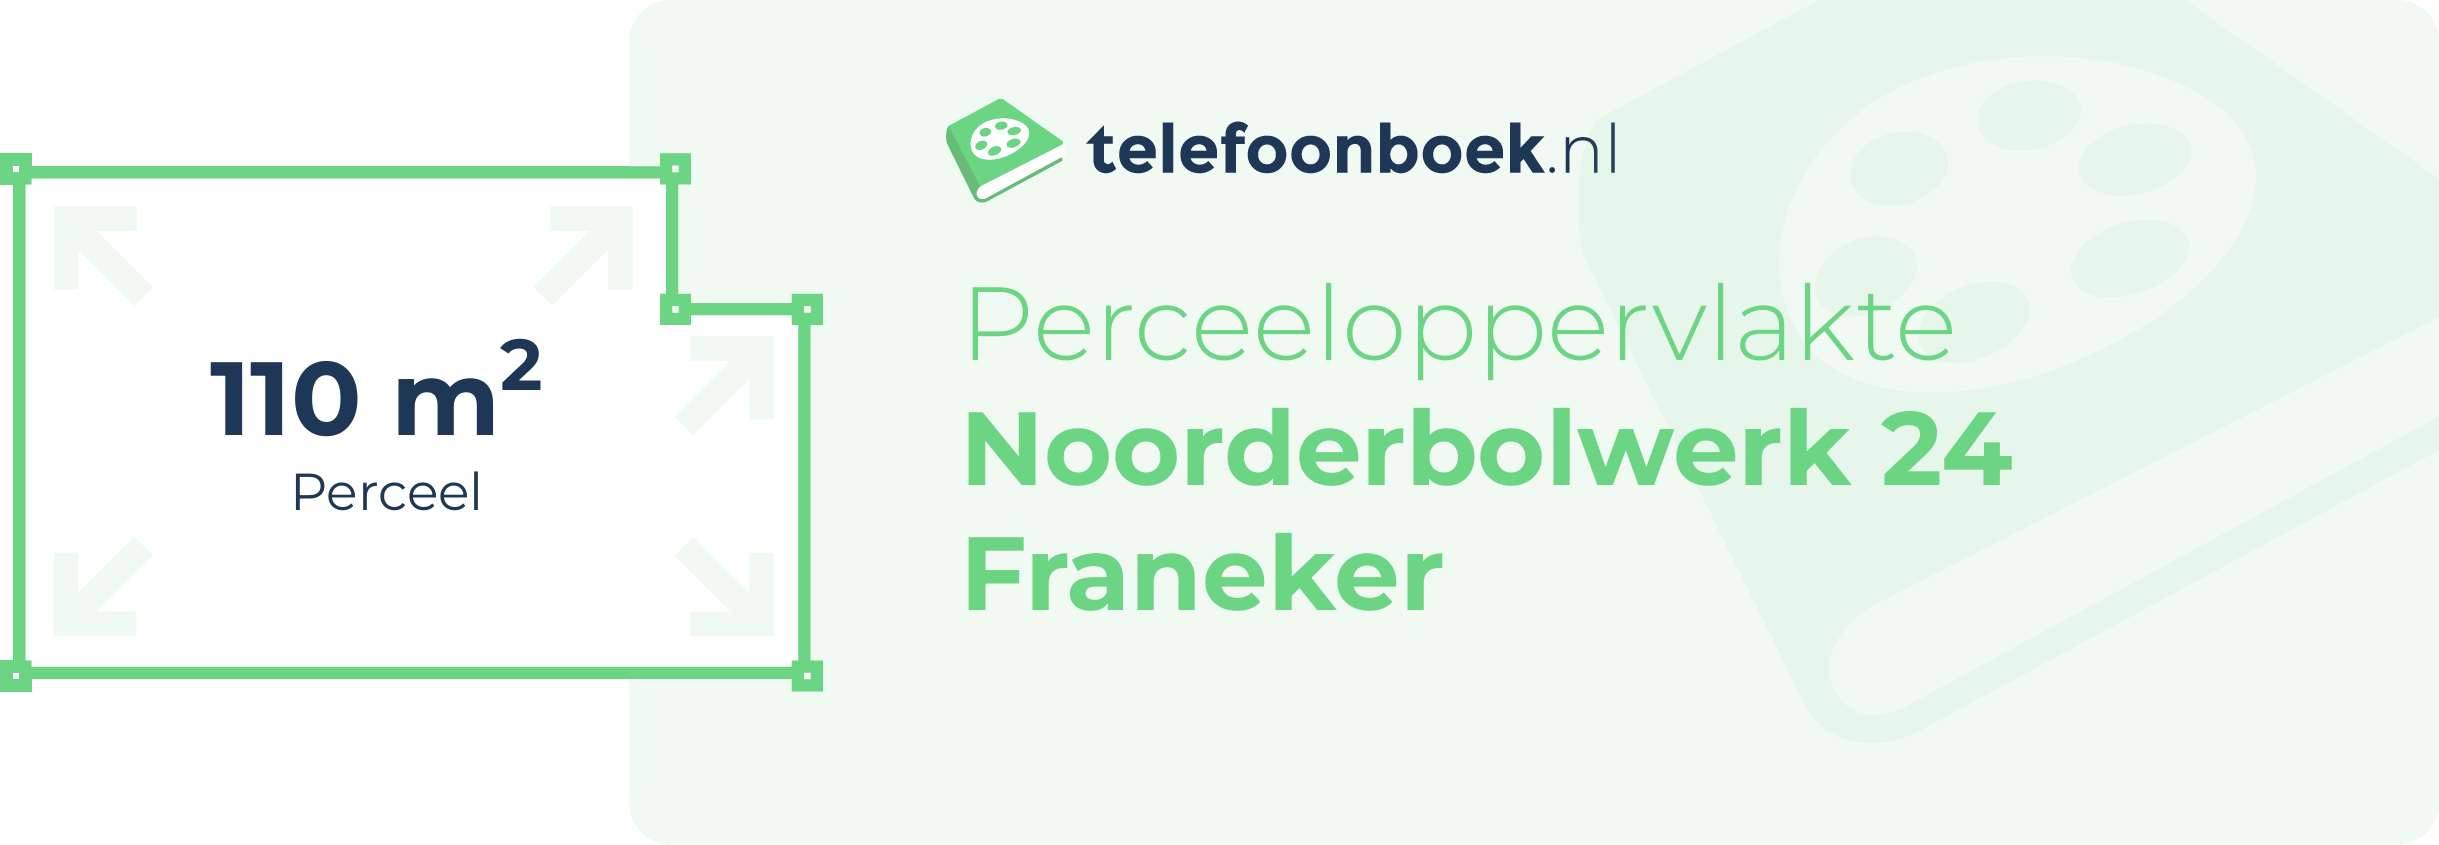 Perceeloppervlakte Noorderbolwerk 24 Franeker